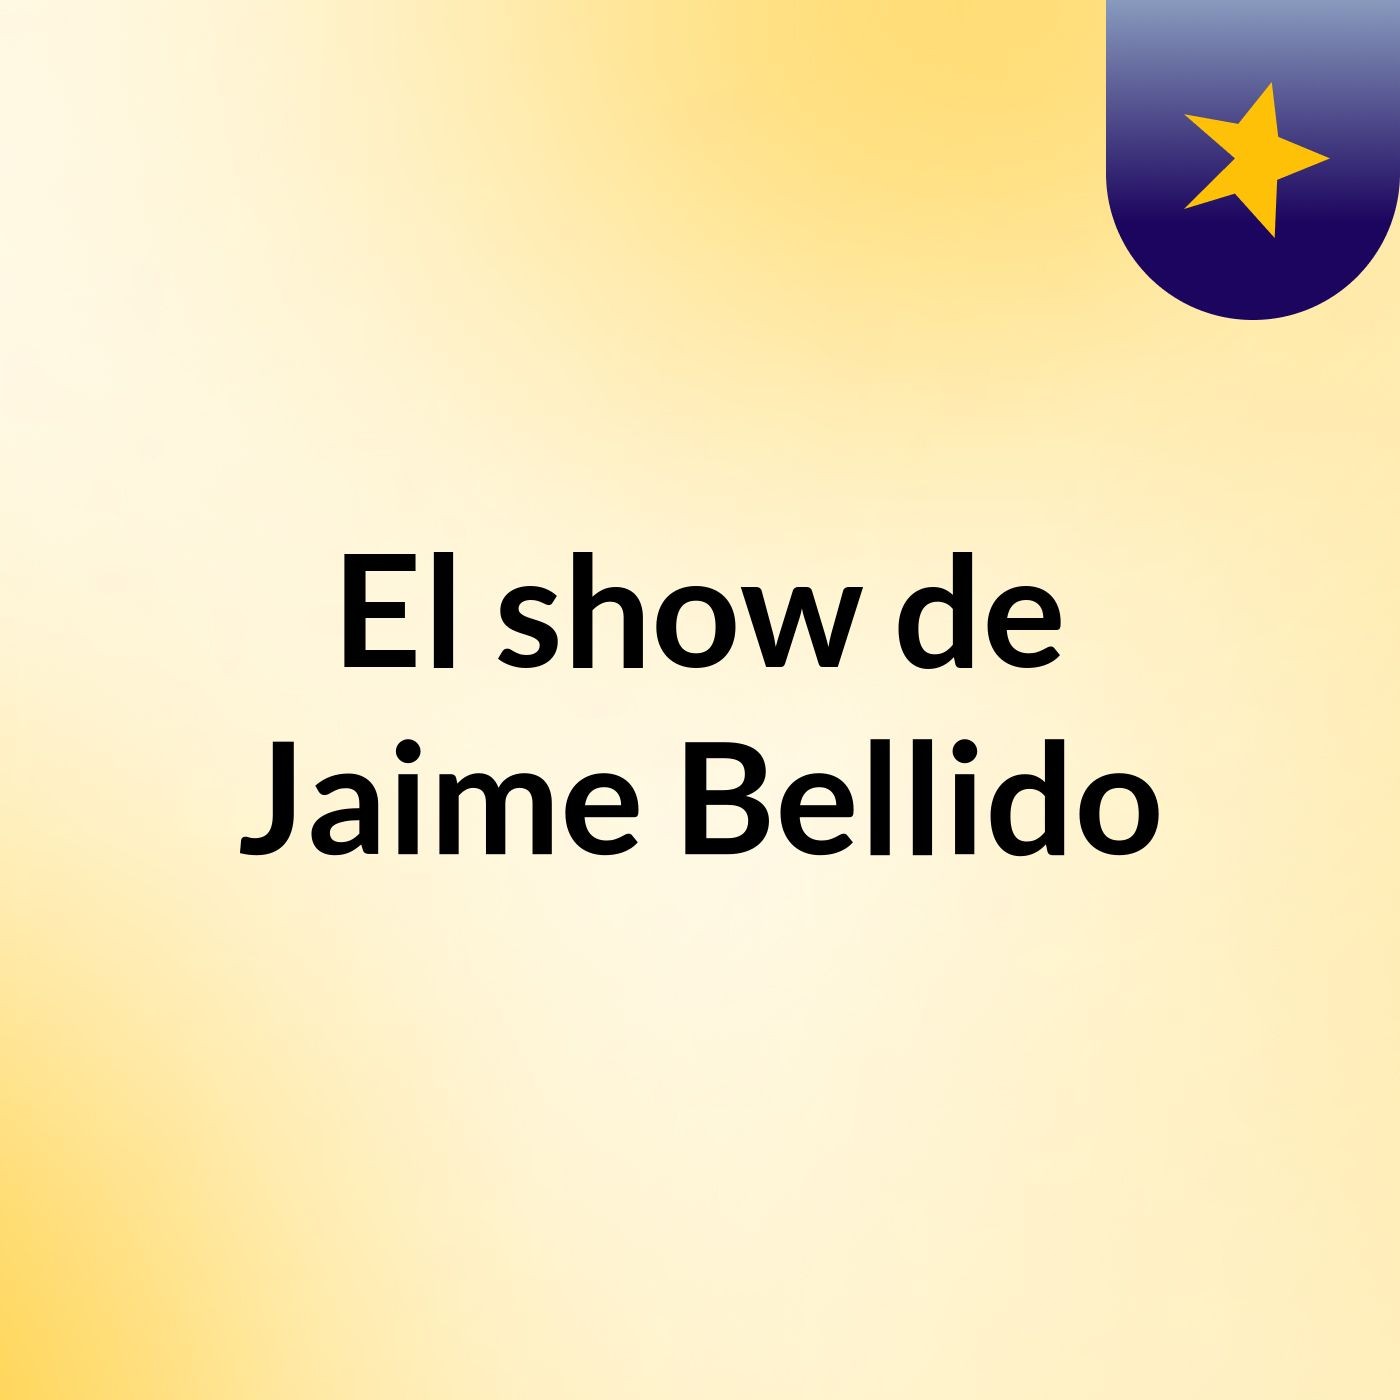 Episodio 2 - El show de Jaime Bellido